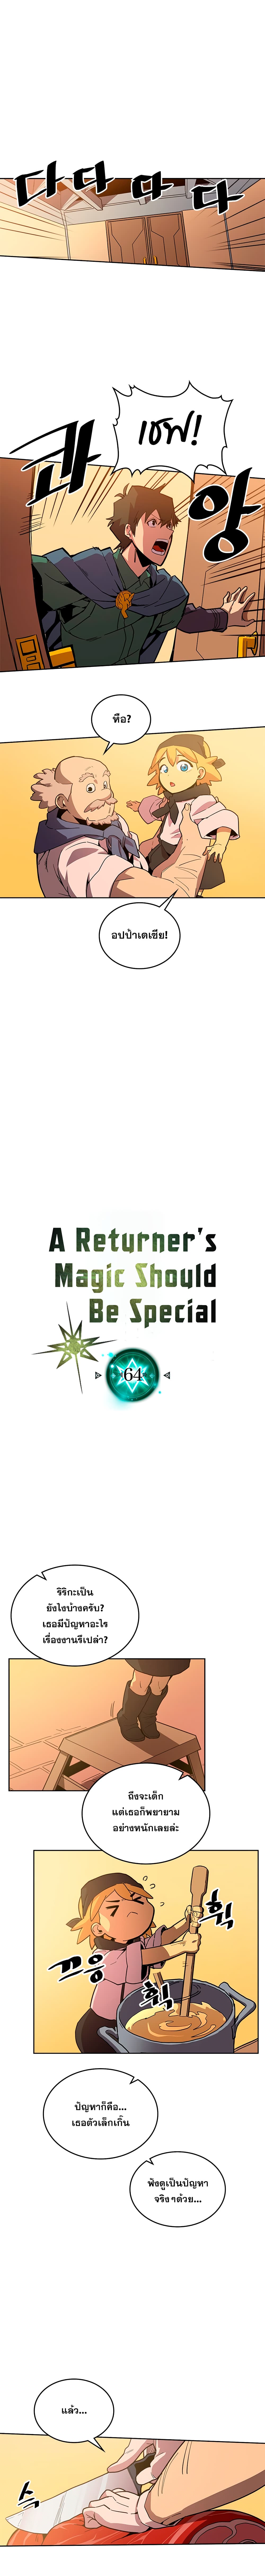 A Returner’s Magic Should Be Special64 02